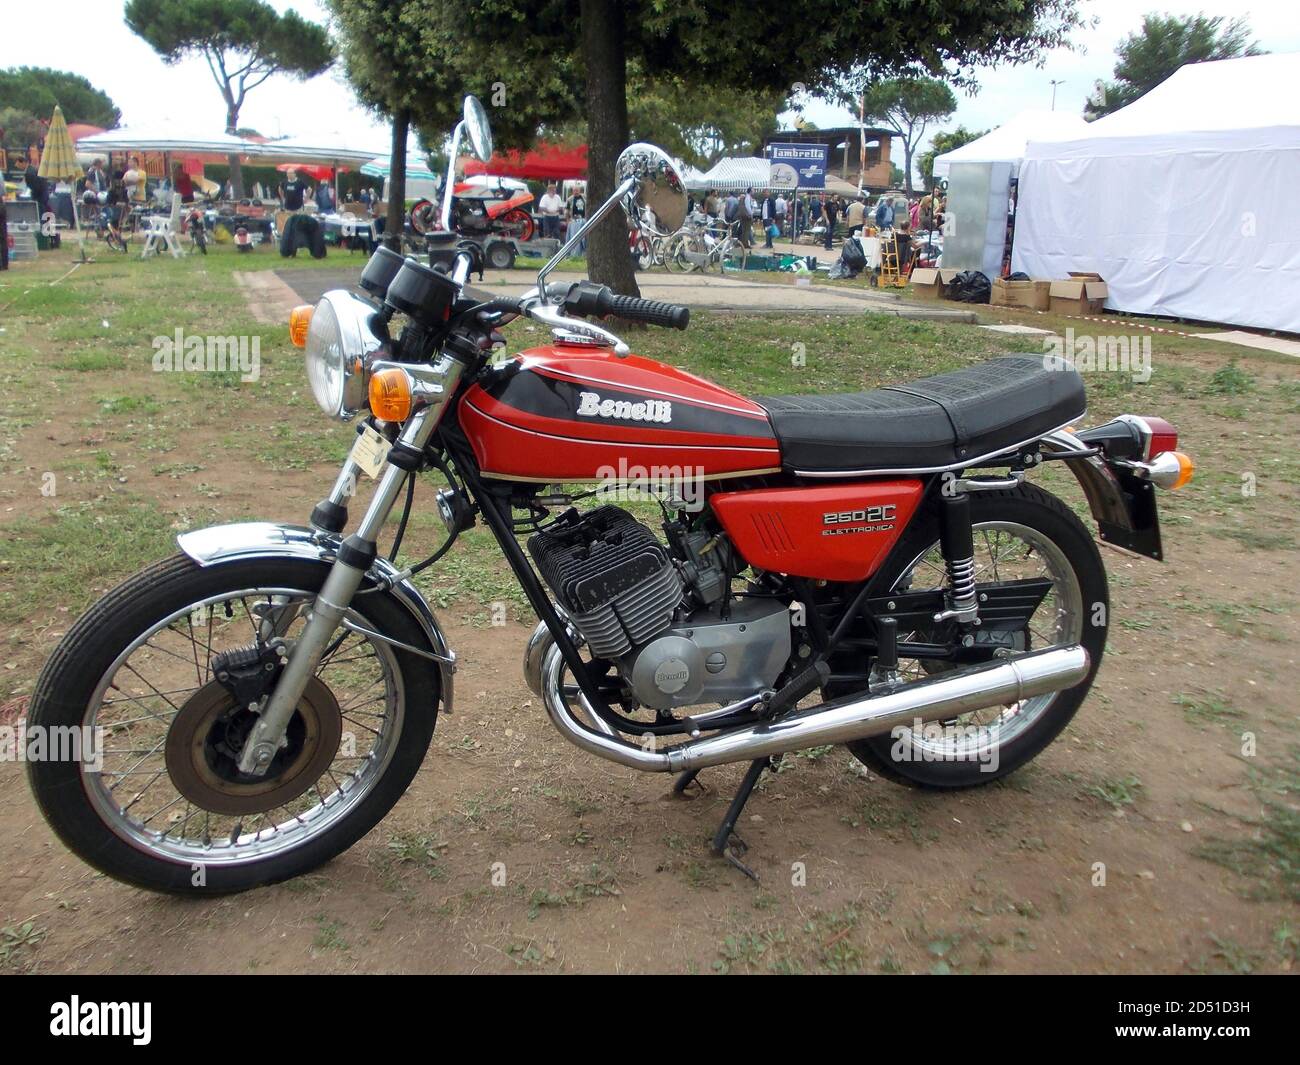 Benelli motorcycle with rider -Fotos und -Bildmaterial in hoher Auflösung –  Alamy